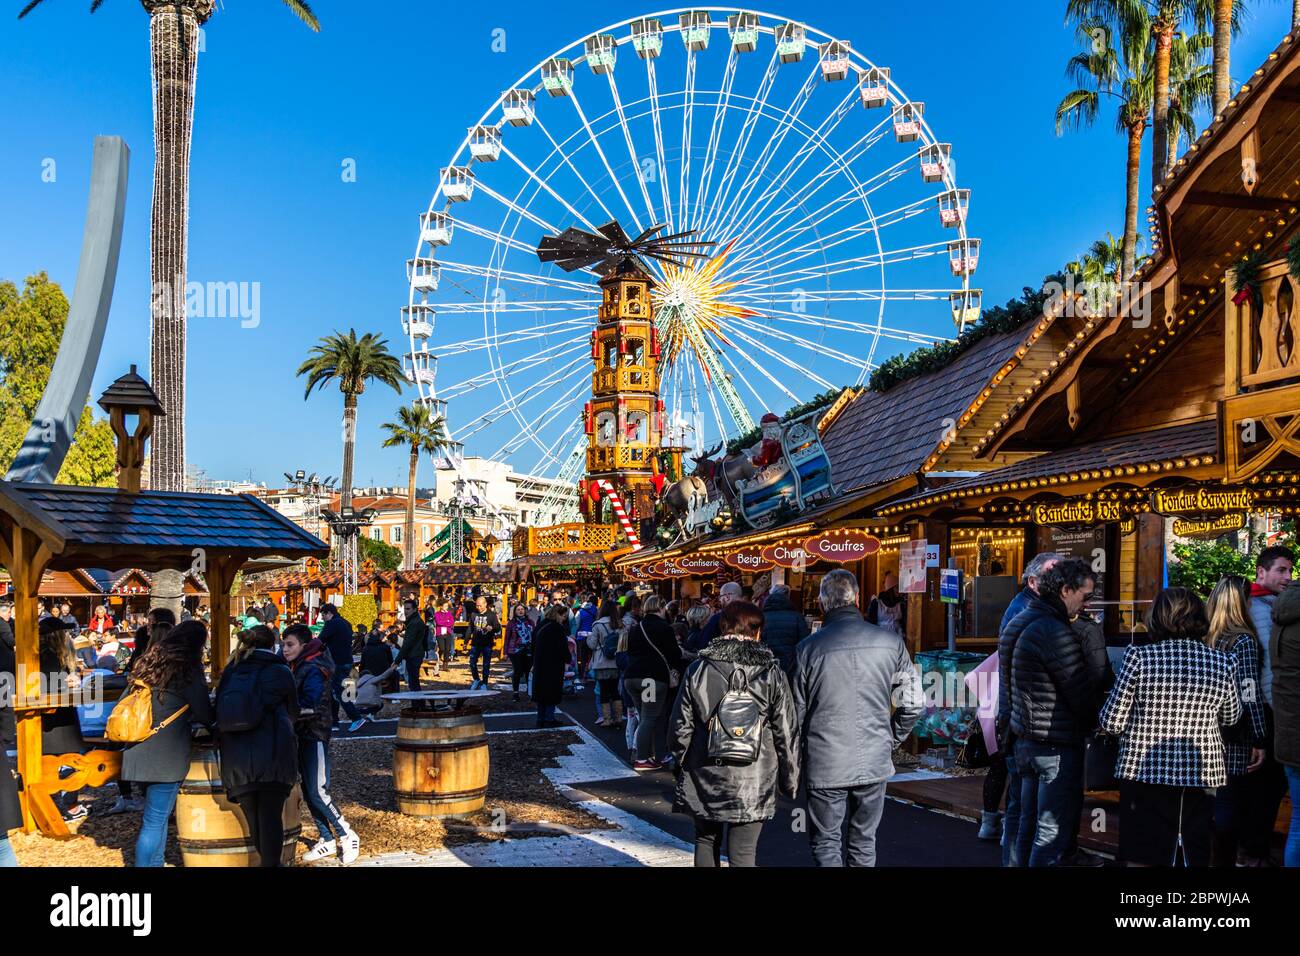 Les gens font du shopping entre les stands du marché de Noël de Nice sous la grande roue. Nice, France, janvier 2020 Banque D'Images